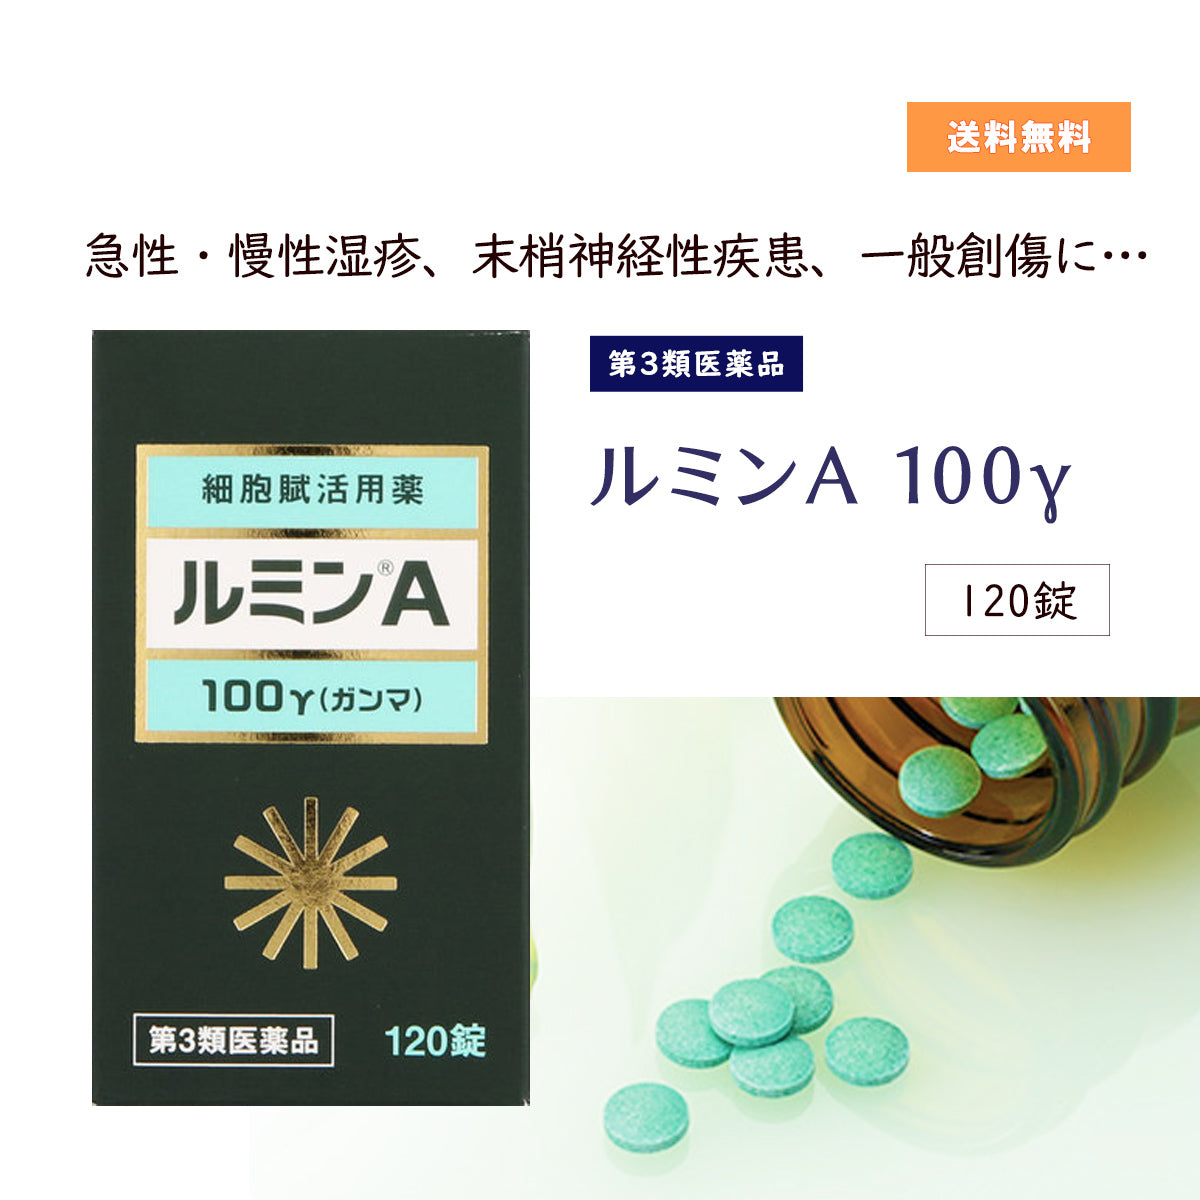 森田薬品工業》錠剤 ルミンA 100γ 400錠